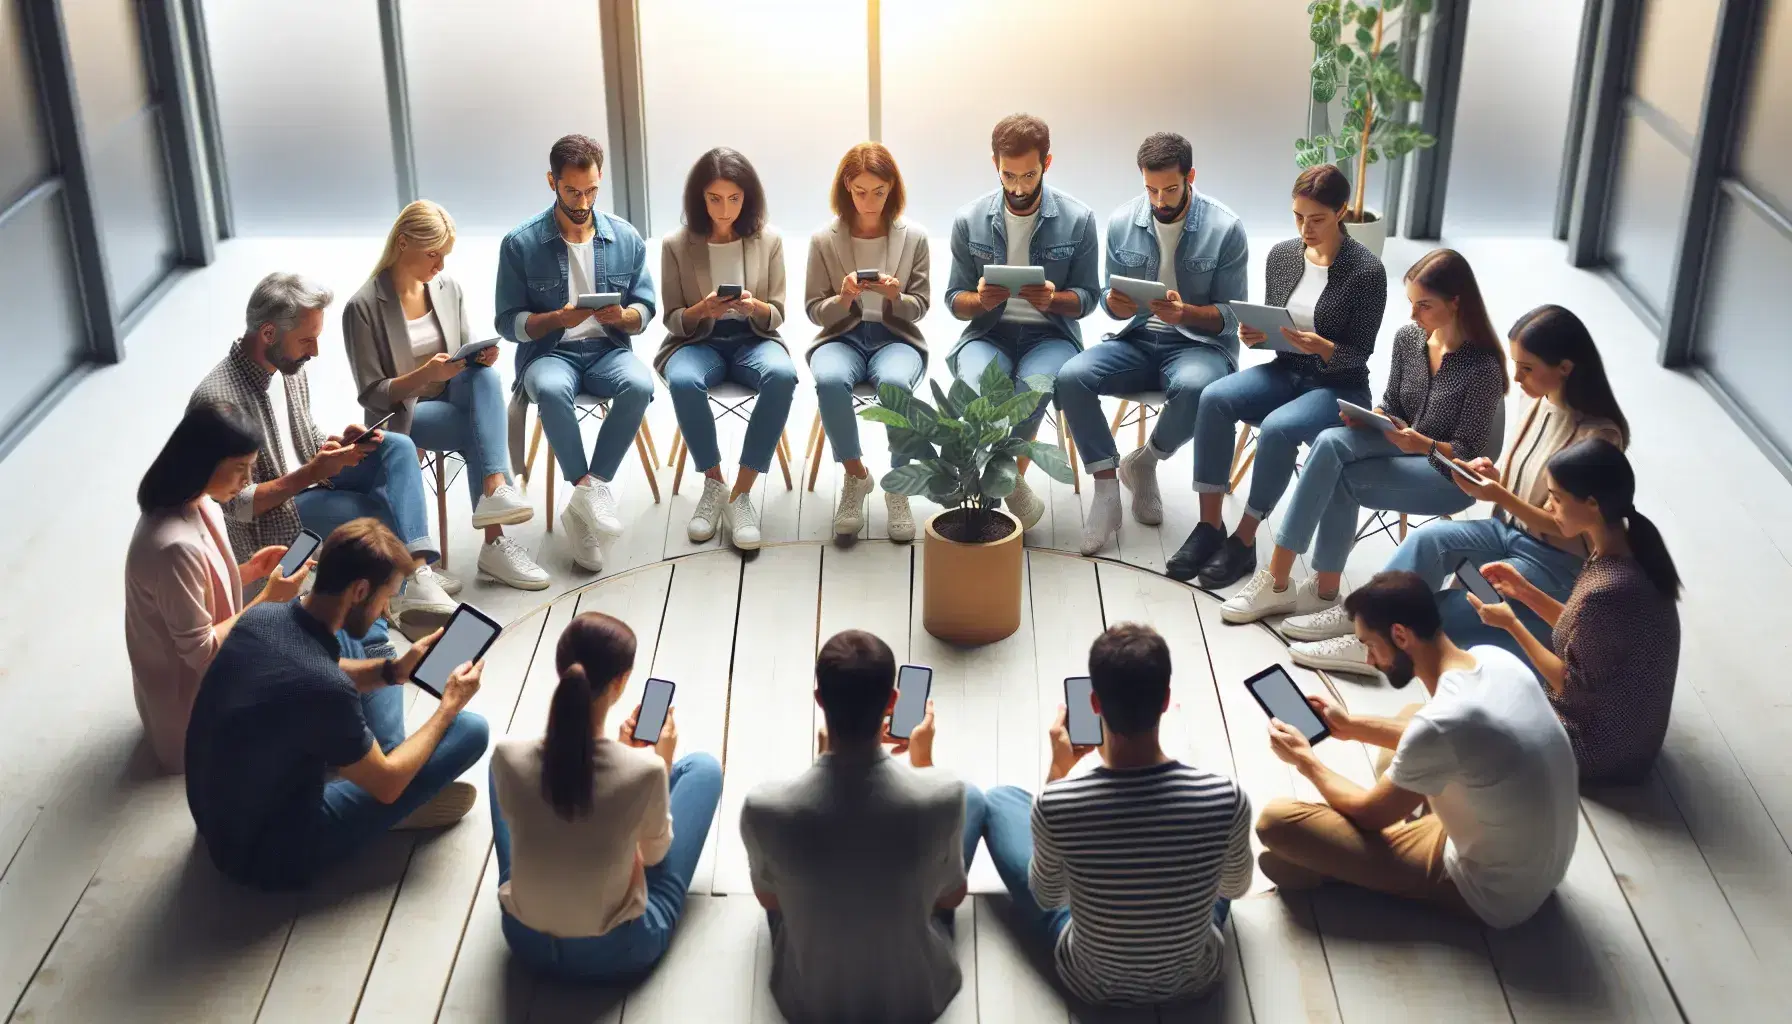 Grupo diverso de personas sentadas en círculo con dispositivos electrónicos en un espacio interior iluminado naturalmente, con una planta en el centro.